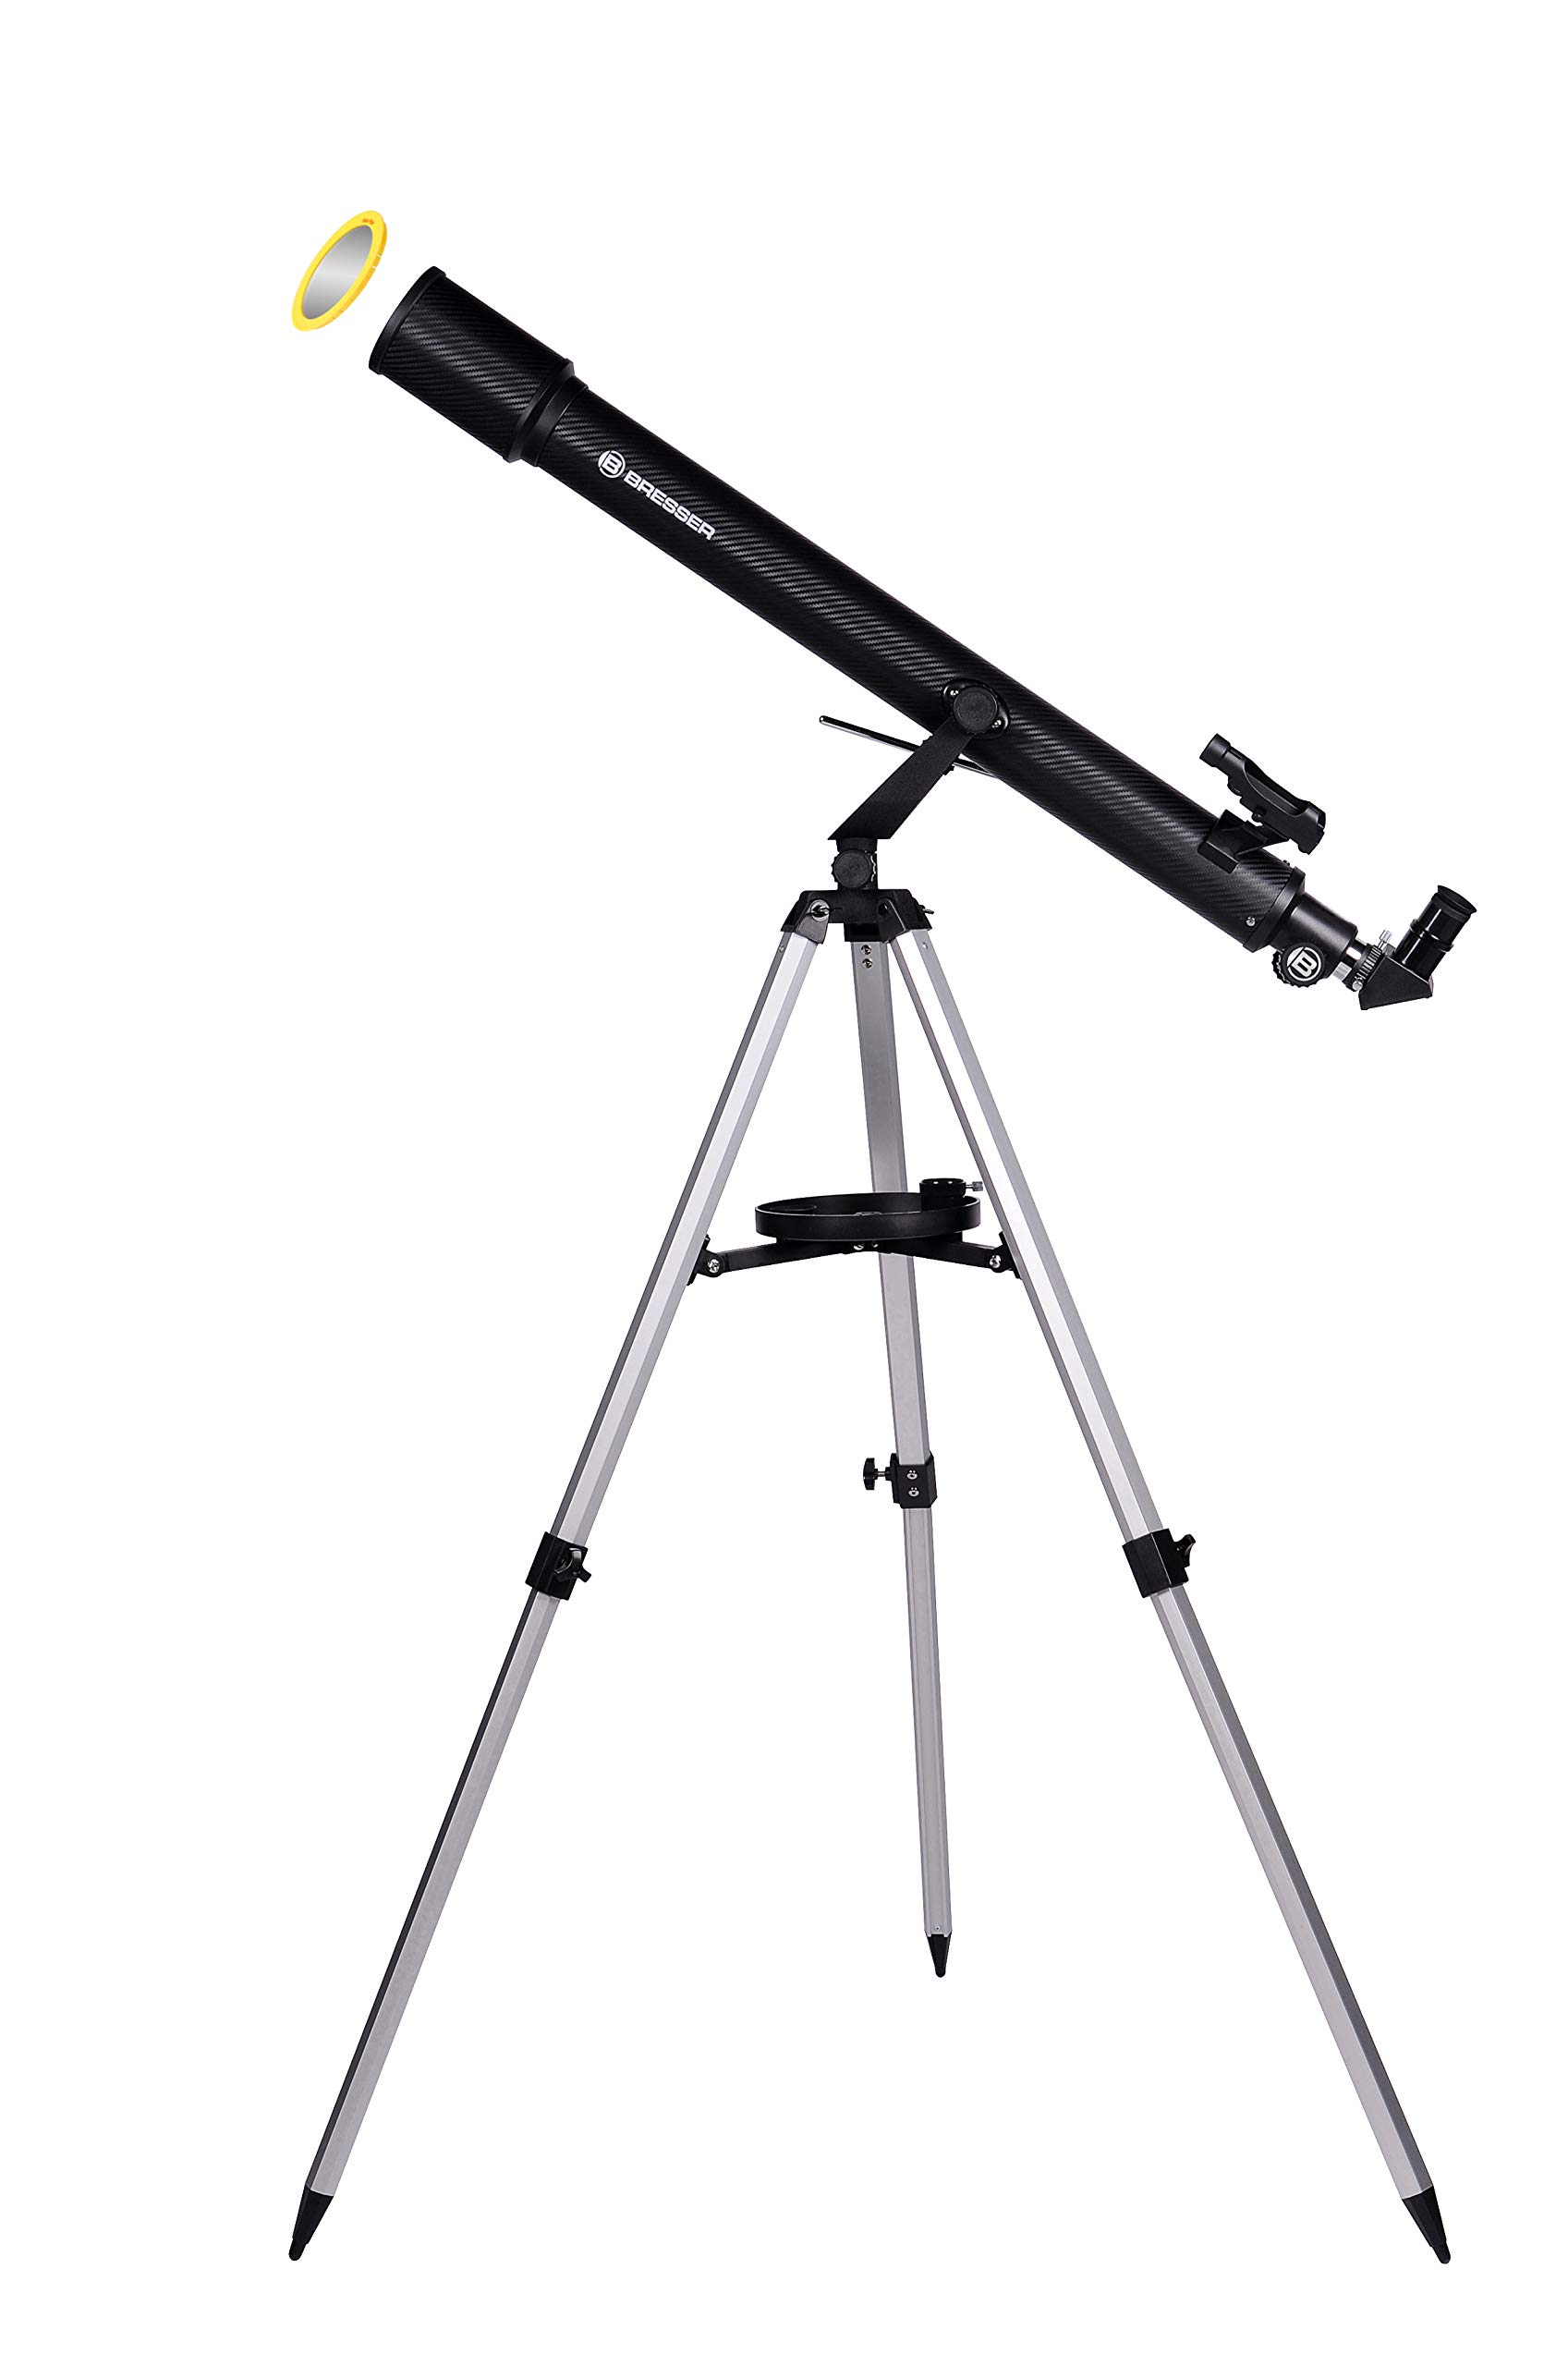 Bresser Einsteiger Linsen-Teleskop Sirius 70/900 AZ mit Smartphone-Adapter, Sonnenfilter, Stativ & Zubehör, für Himmelsbeobachtung & Astrofotografie